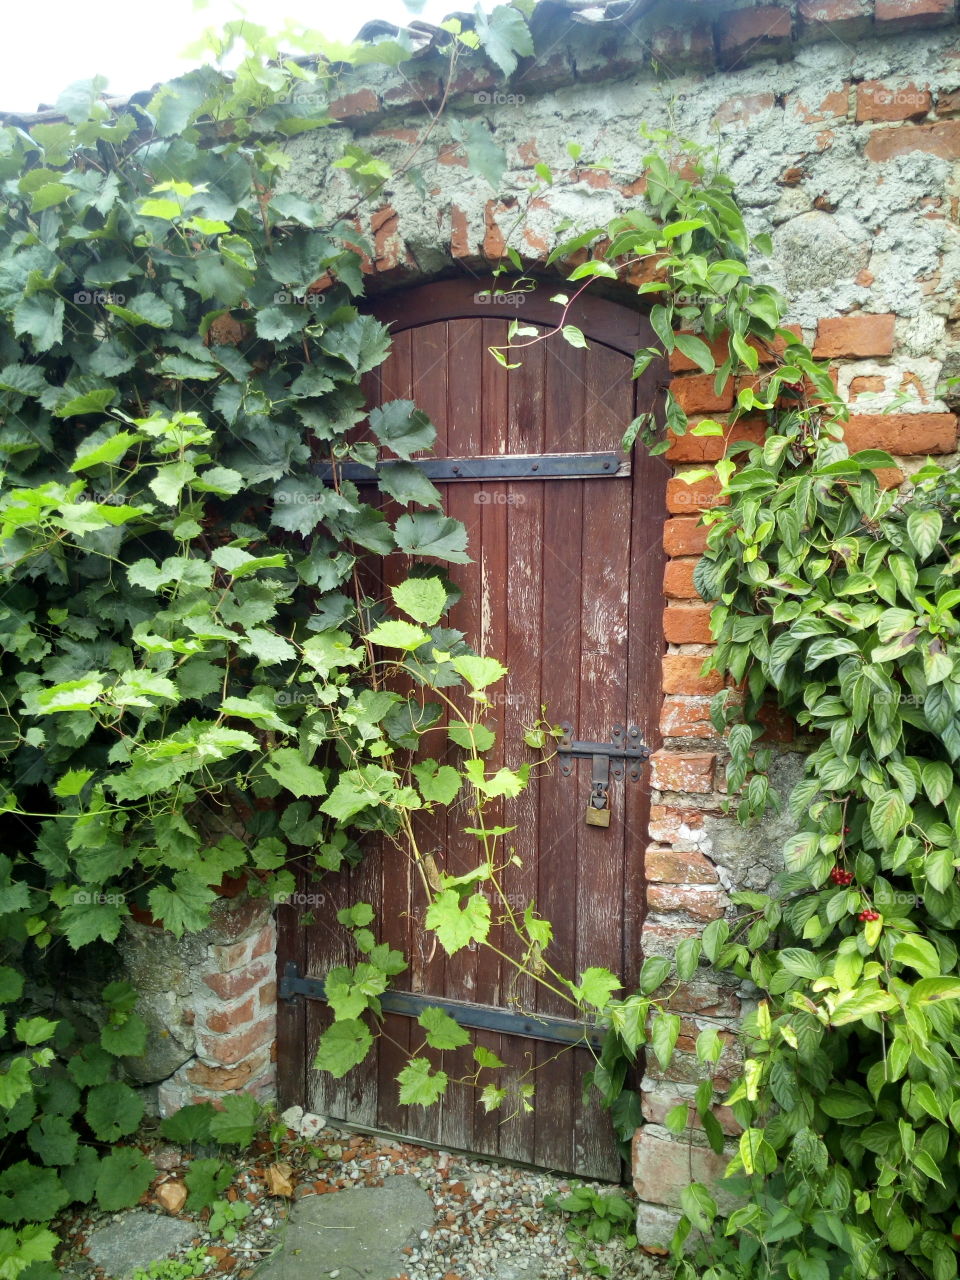 Garden secret doors.